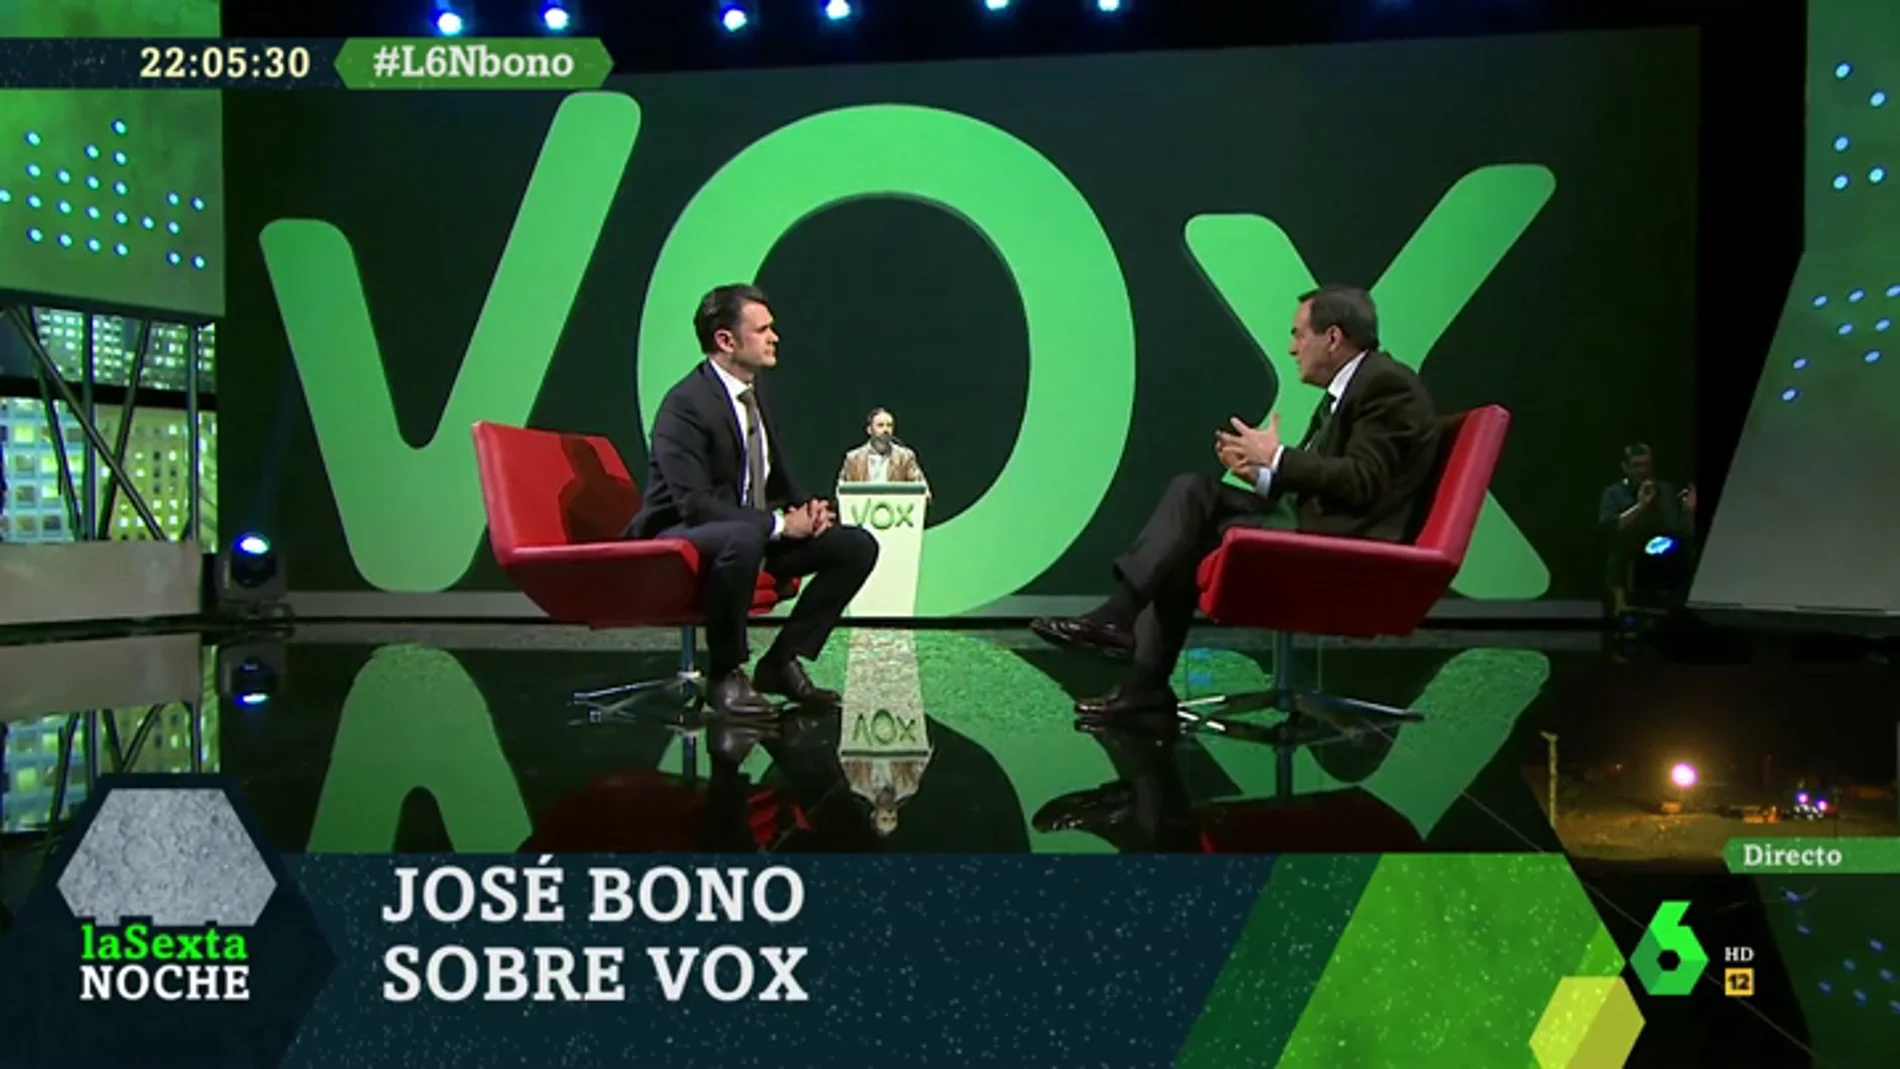 José Bono: "Vox representa lo más negro de España, deberían sentir vergüenza de sus posiciones"